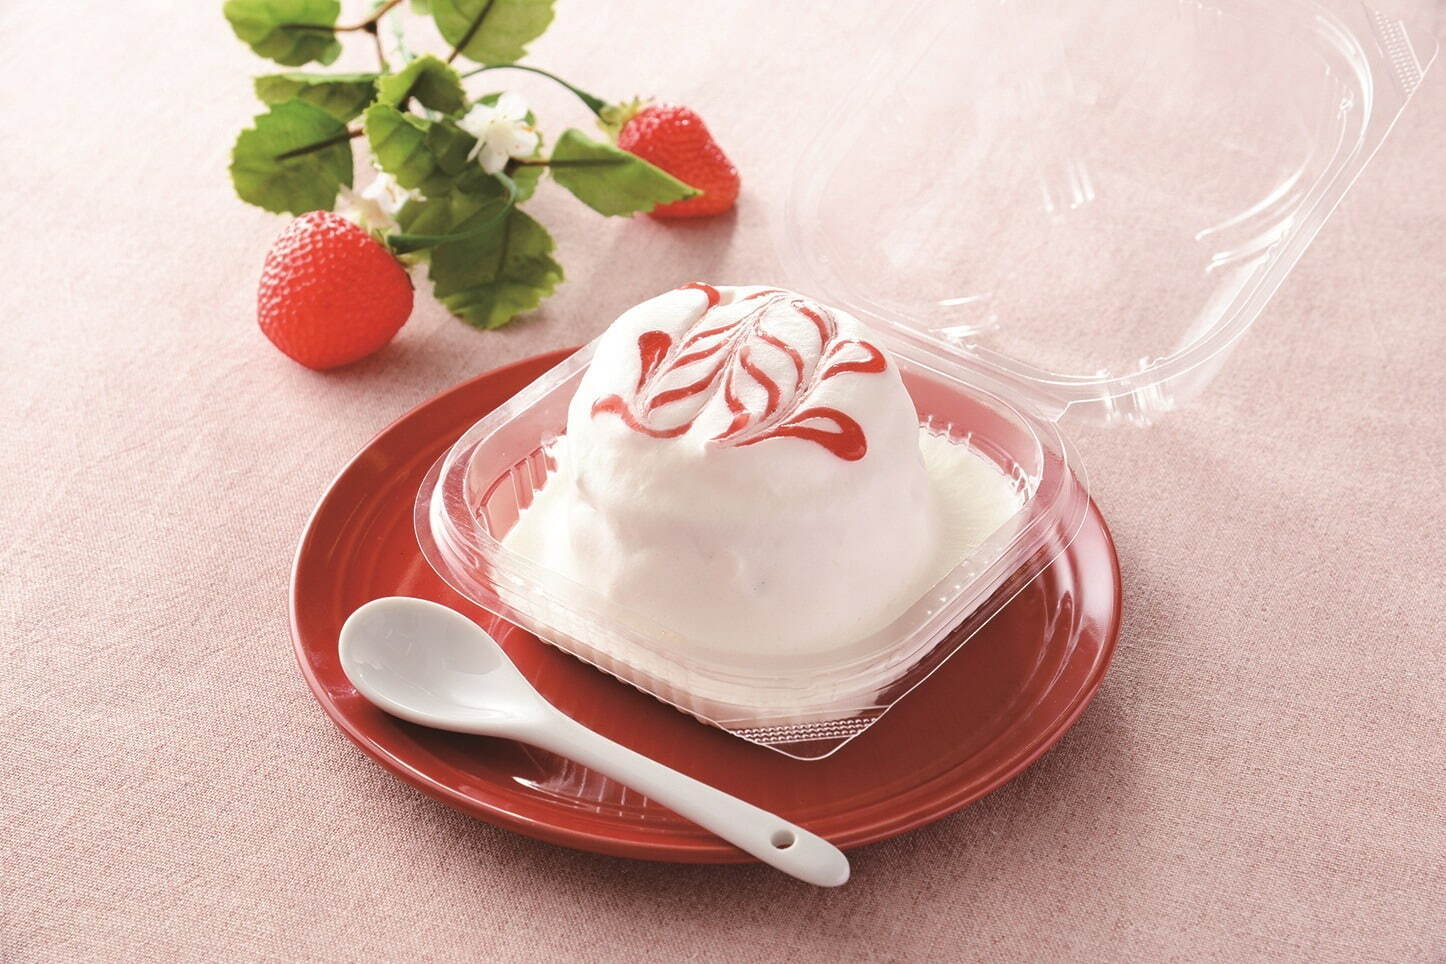 おぼれクリームのパンケーキ(いちごの味わい) 265円